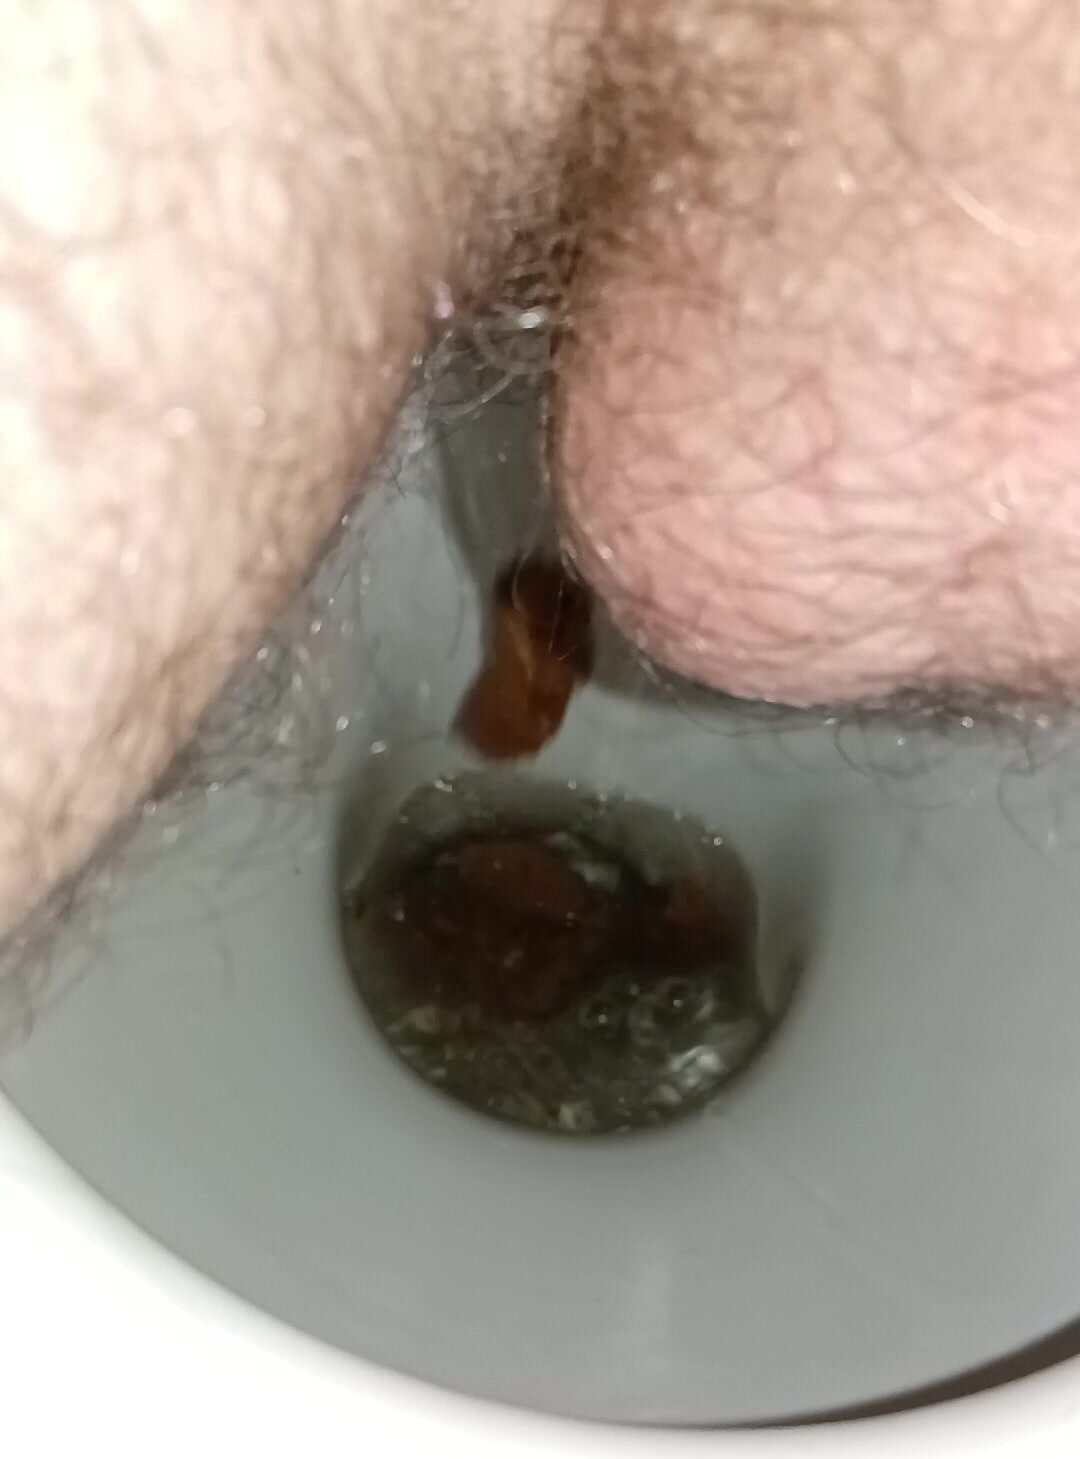 Pooping in public toilet - video 3